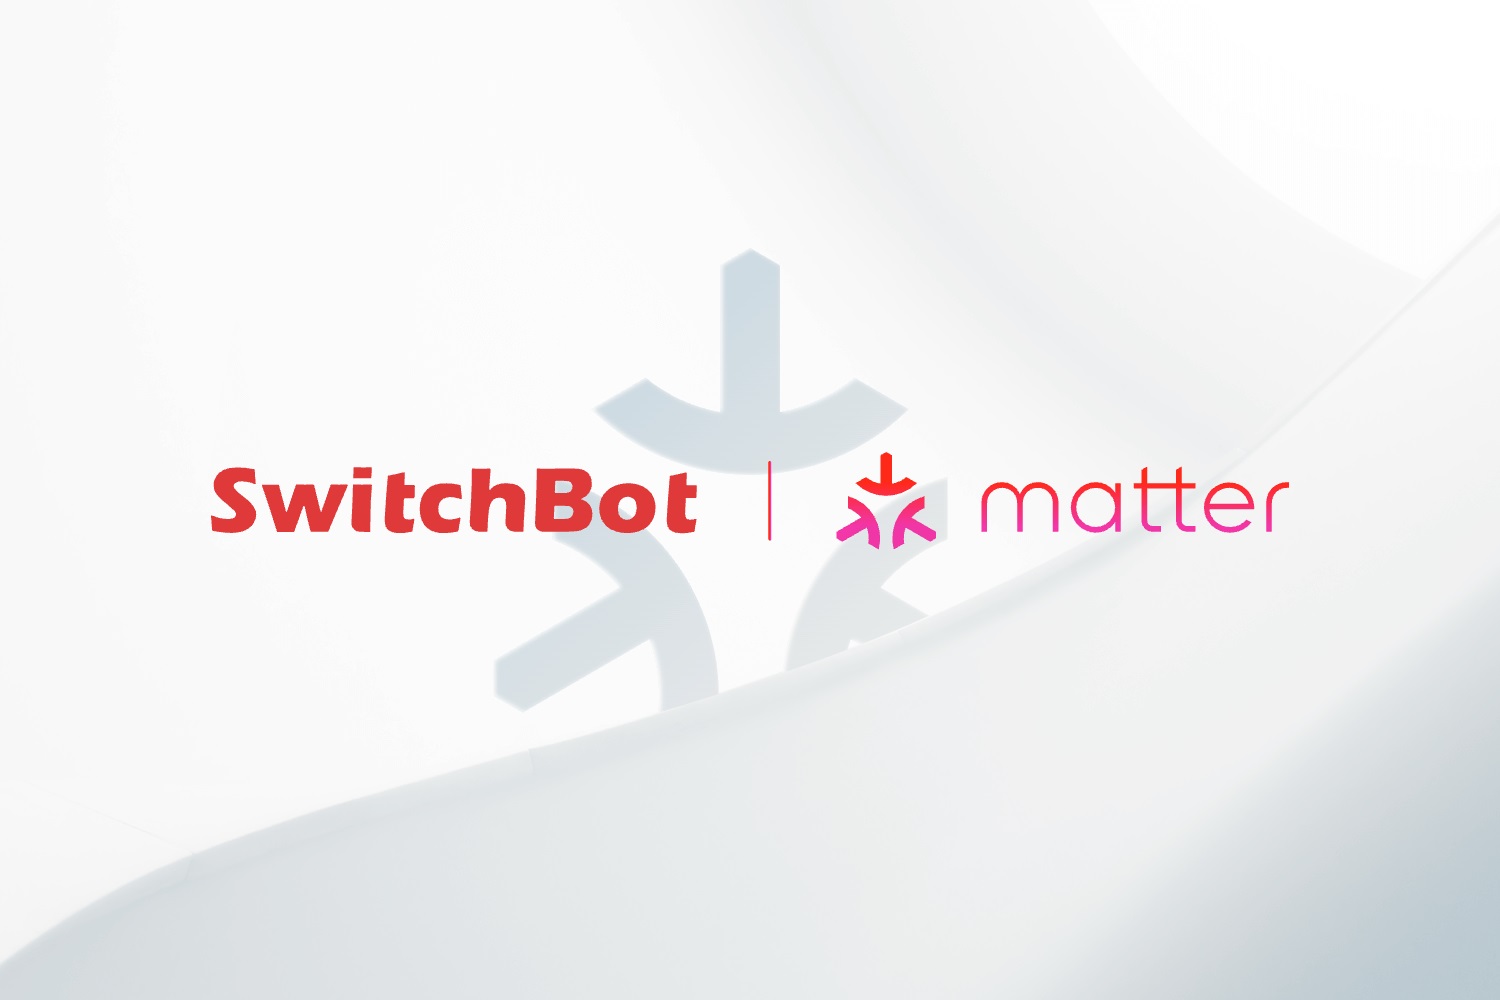 Roboty Switchbot obsługują Matter, ale kiepsko. Wina leży po stronie platform inteligentnego domu